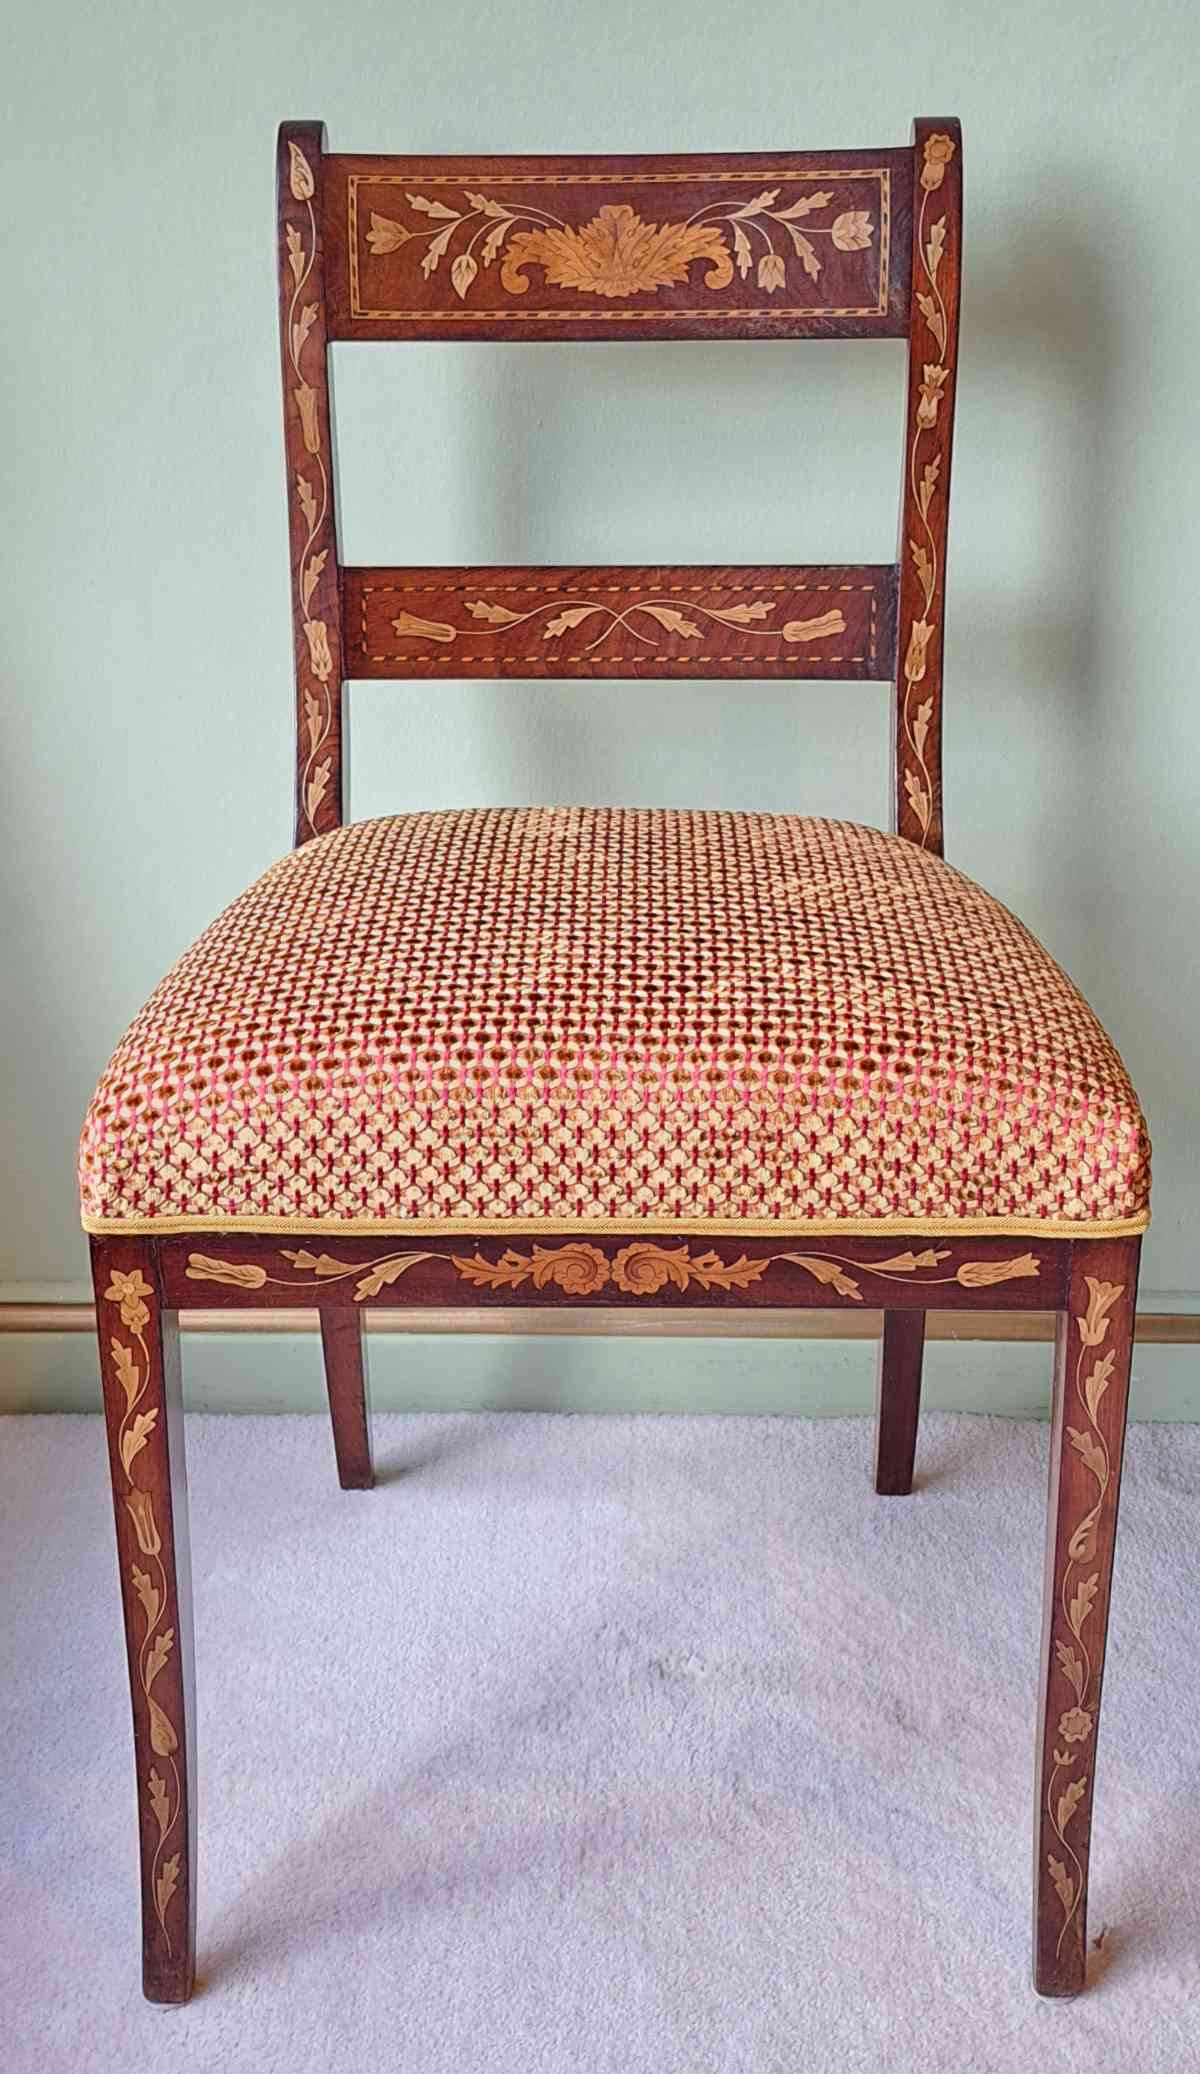 Antiker Stuhl, intarsiert, aus den Niederlanden, wohl 19. Jahrhundert, neu gepolstert und bezogen, Frontalansicht.